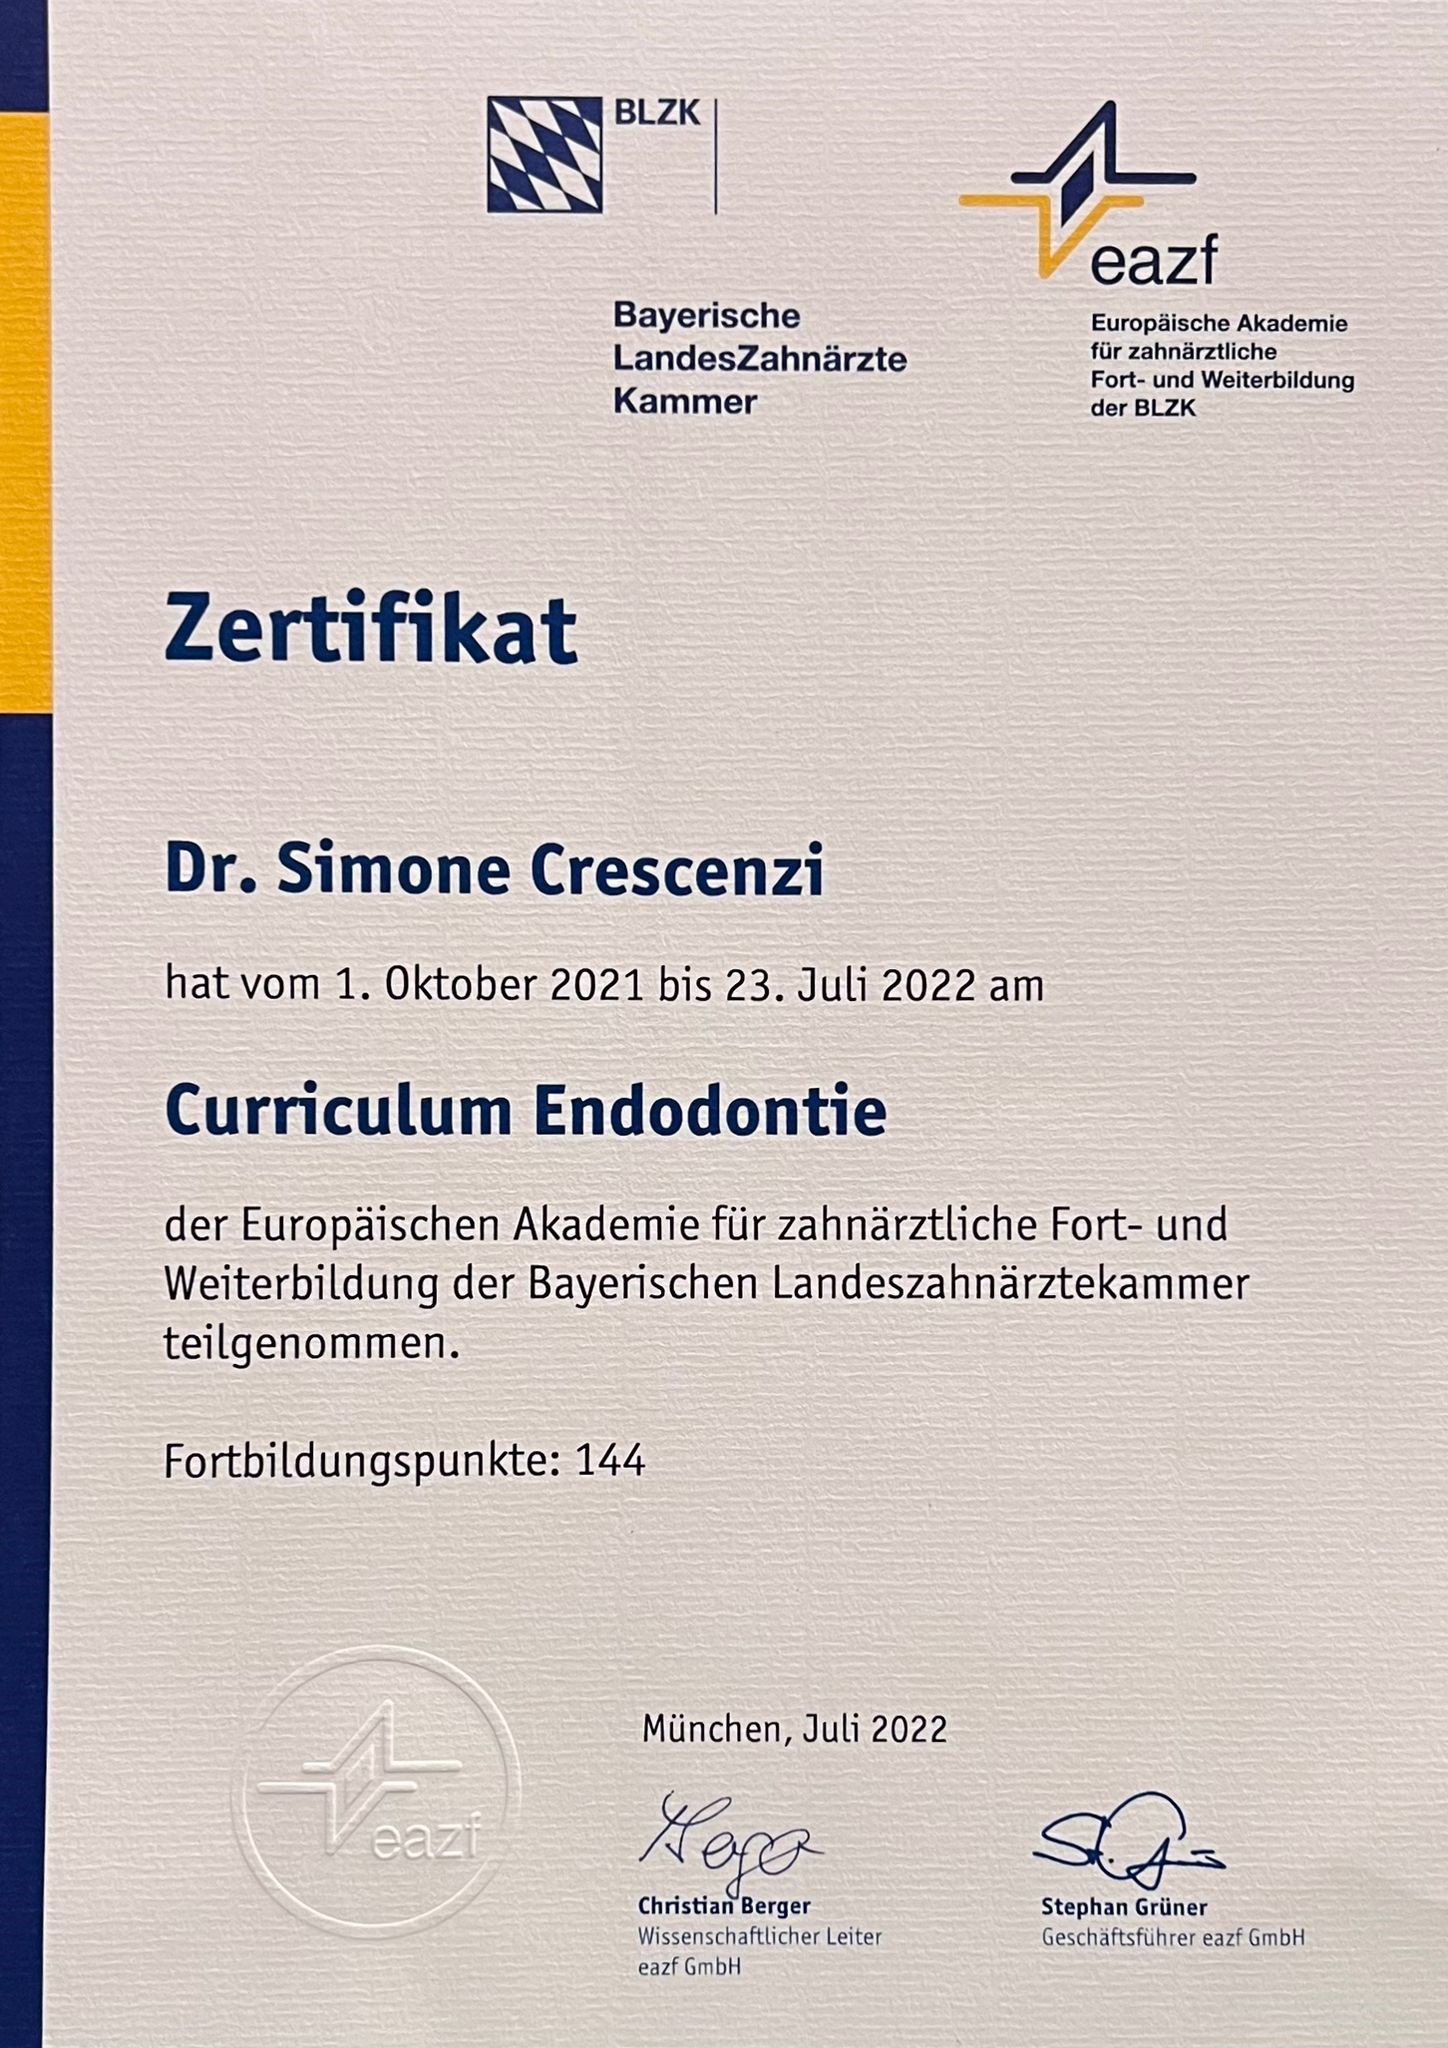 Dr. Crescenzi